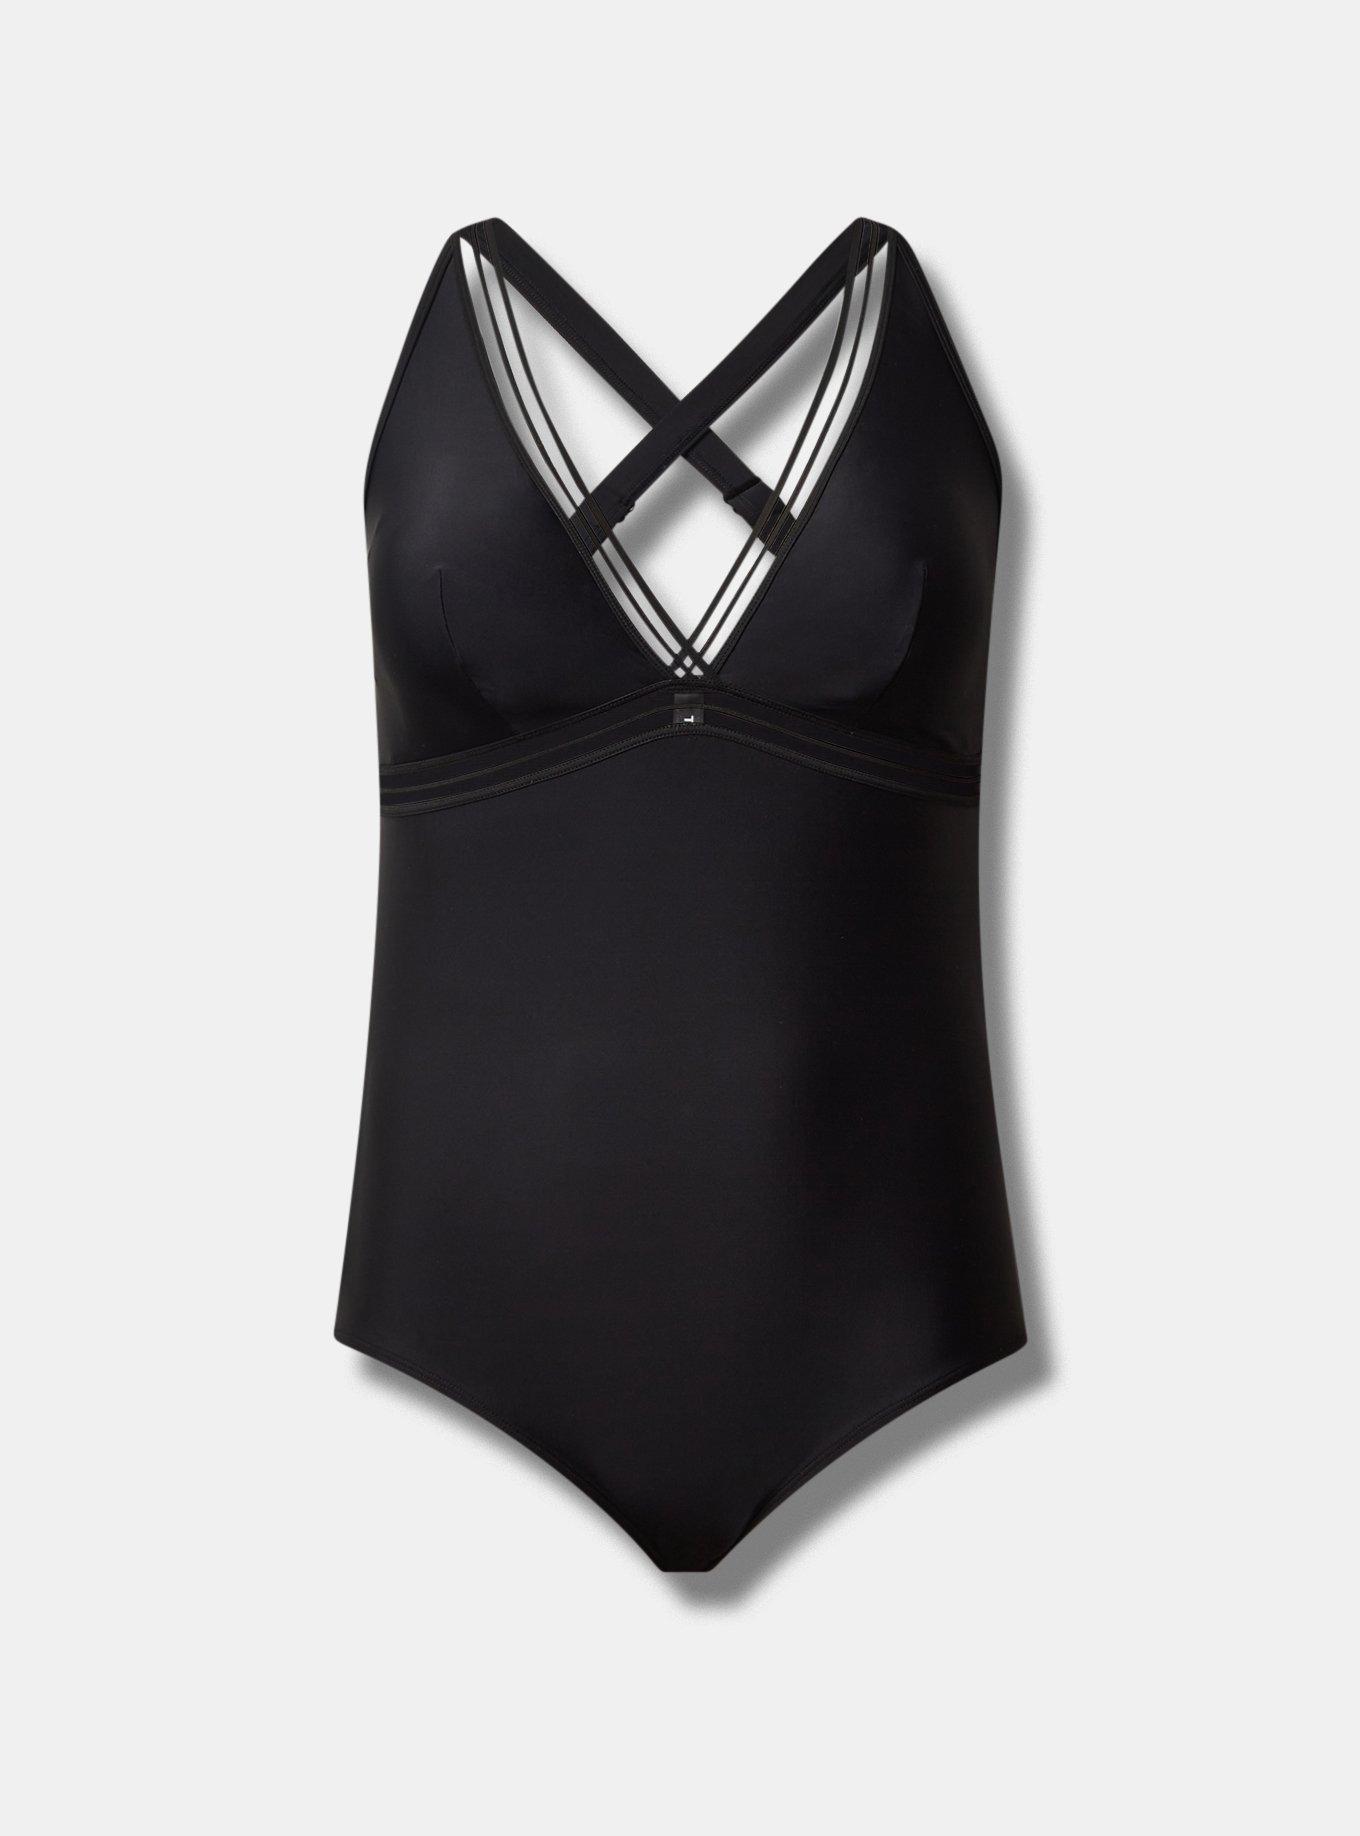 Womens Swimwear Wholesale Black White 2021 Underwire Mesh One